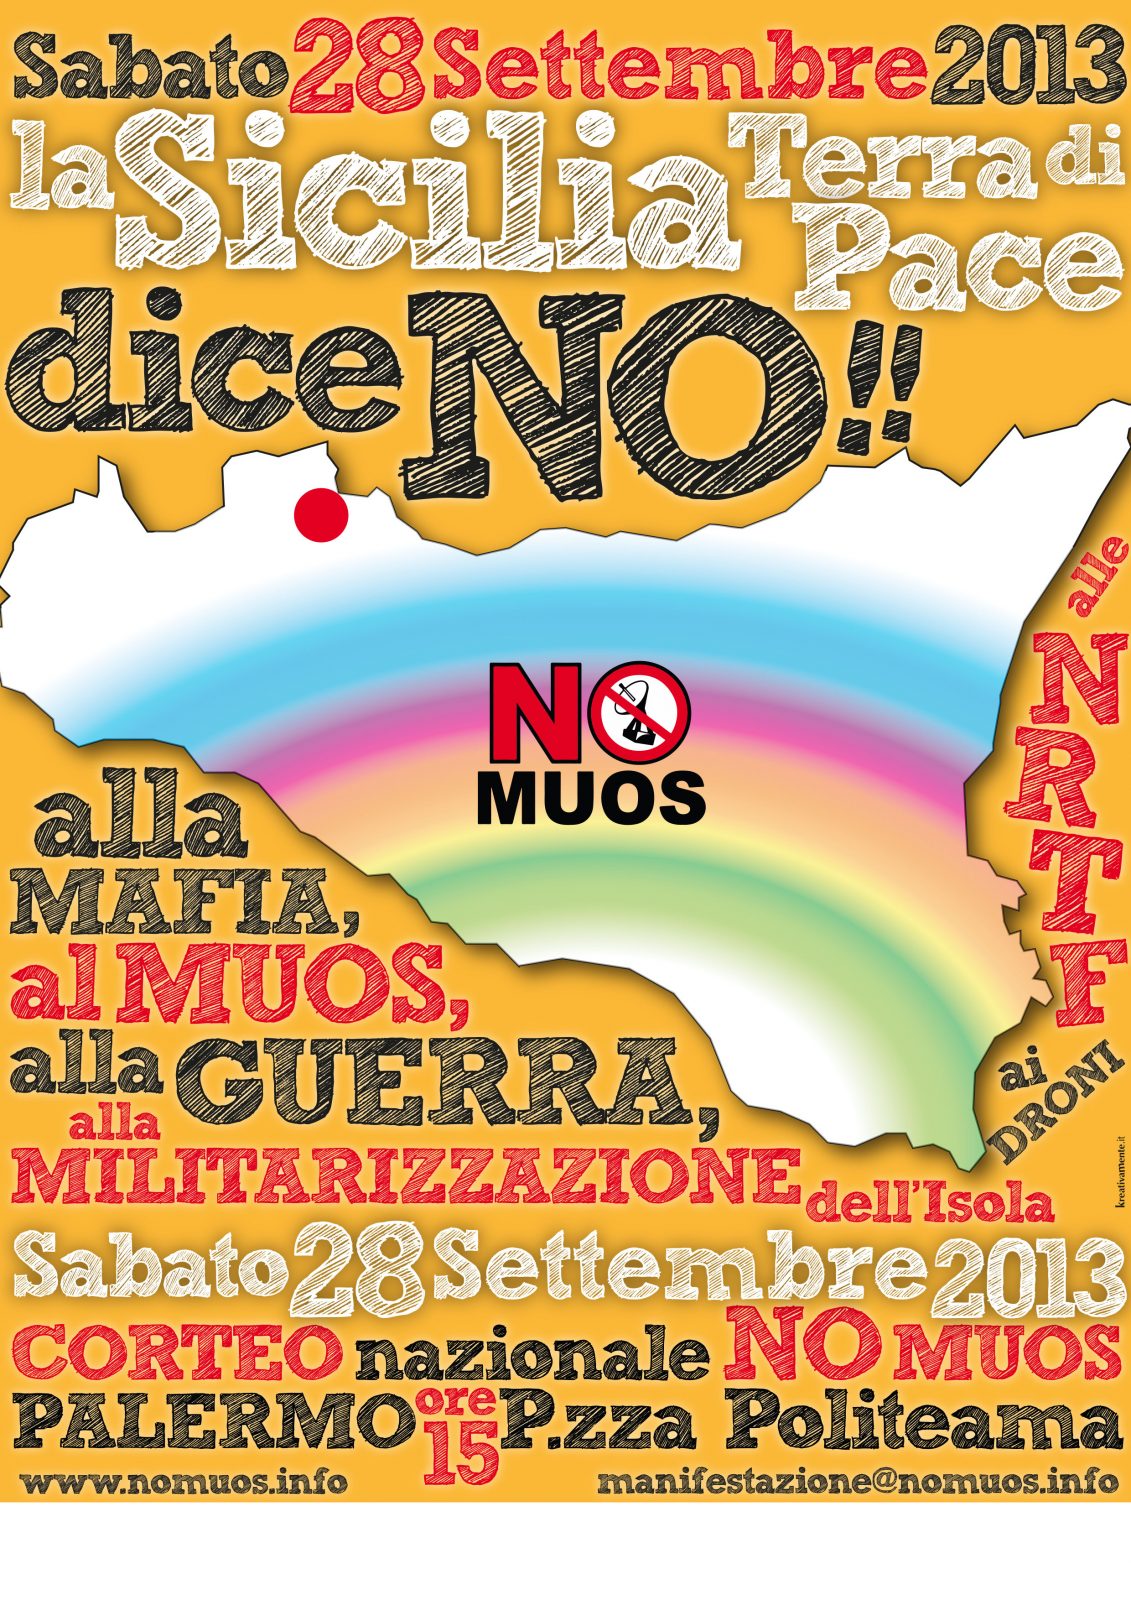 28 SETTEMBRE 2013 - Corteo Nazionale No Muos a Palermo  5